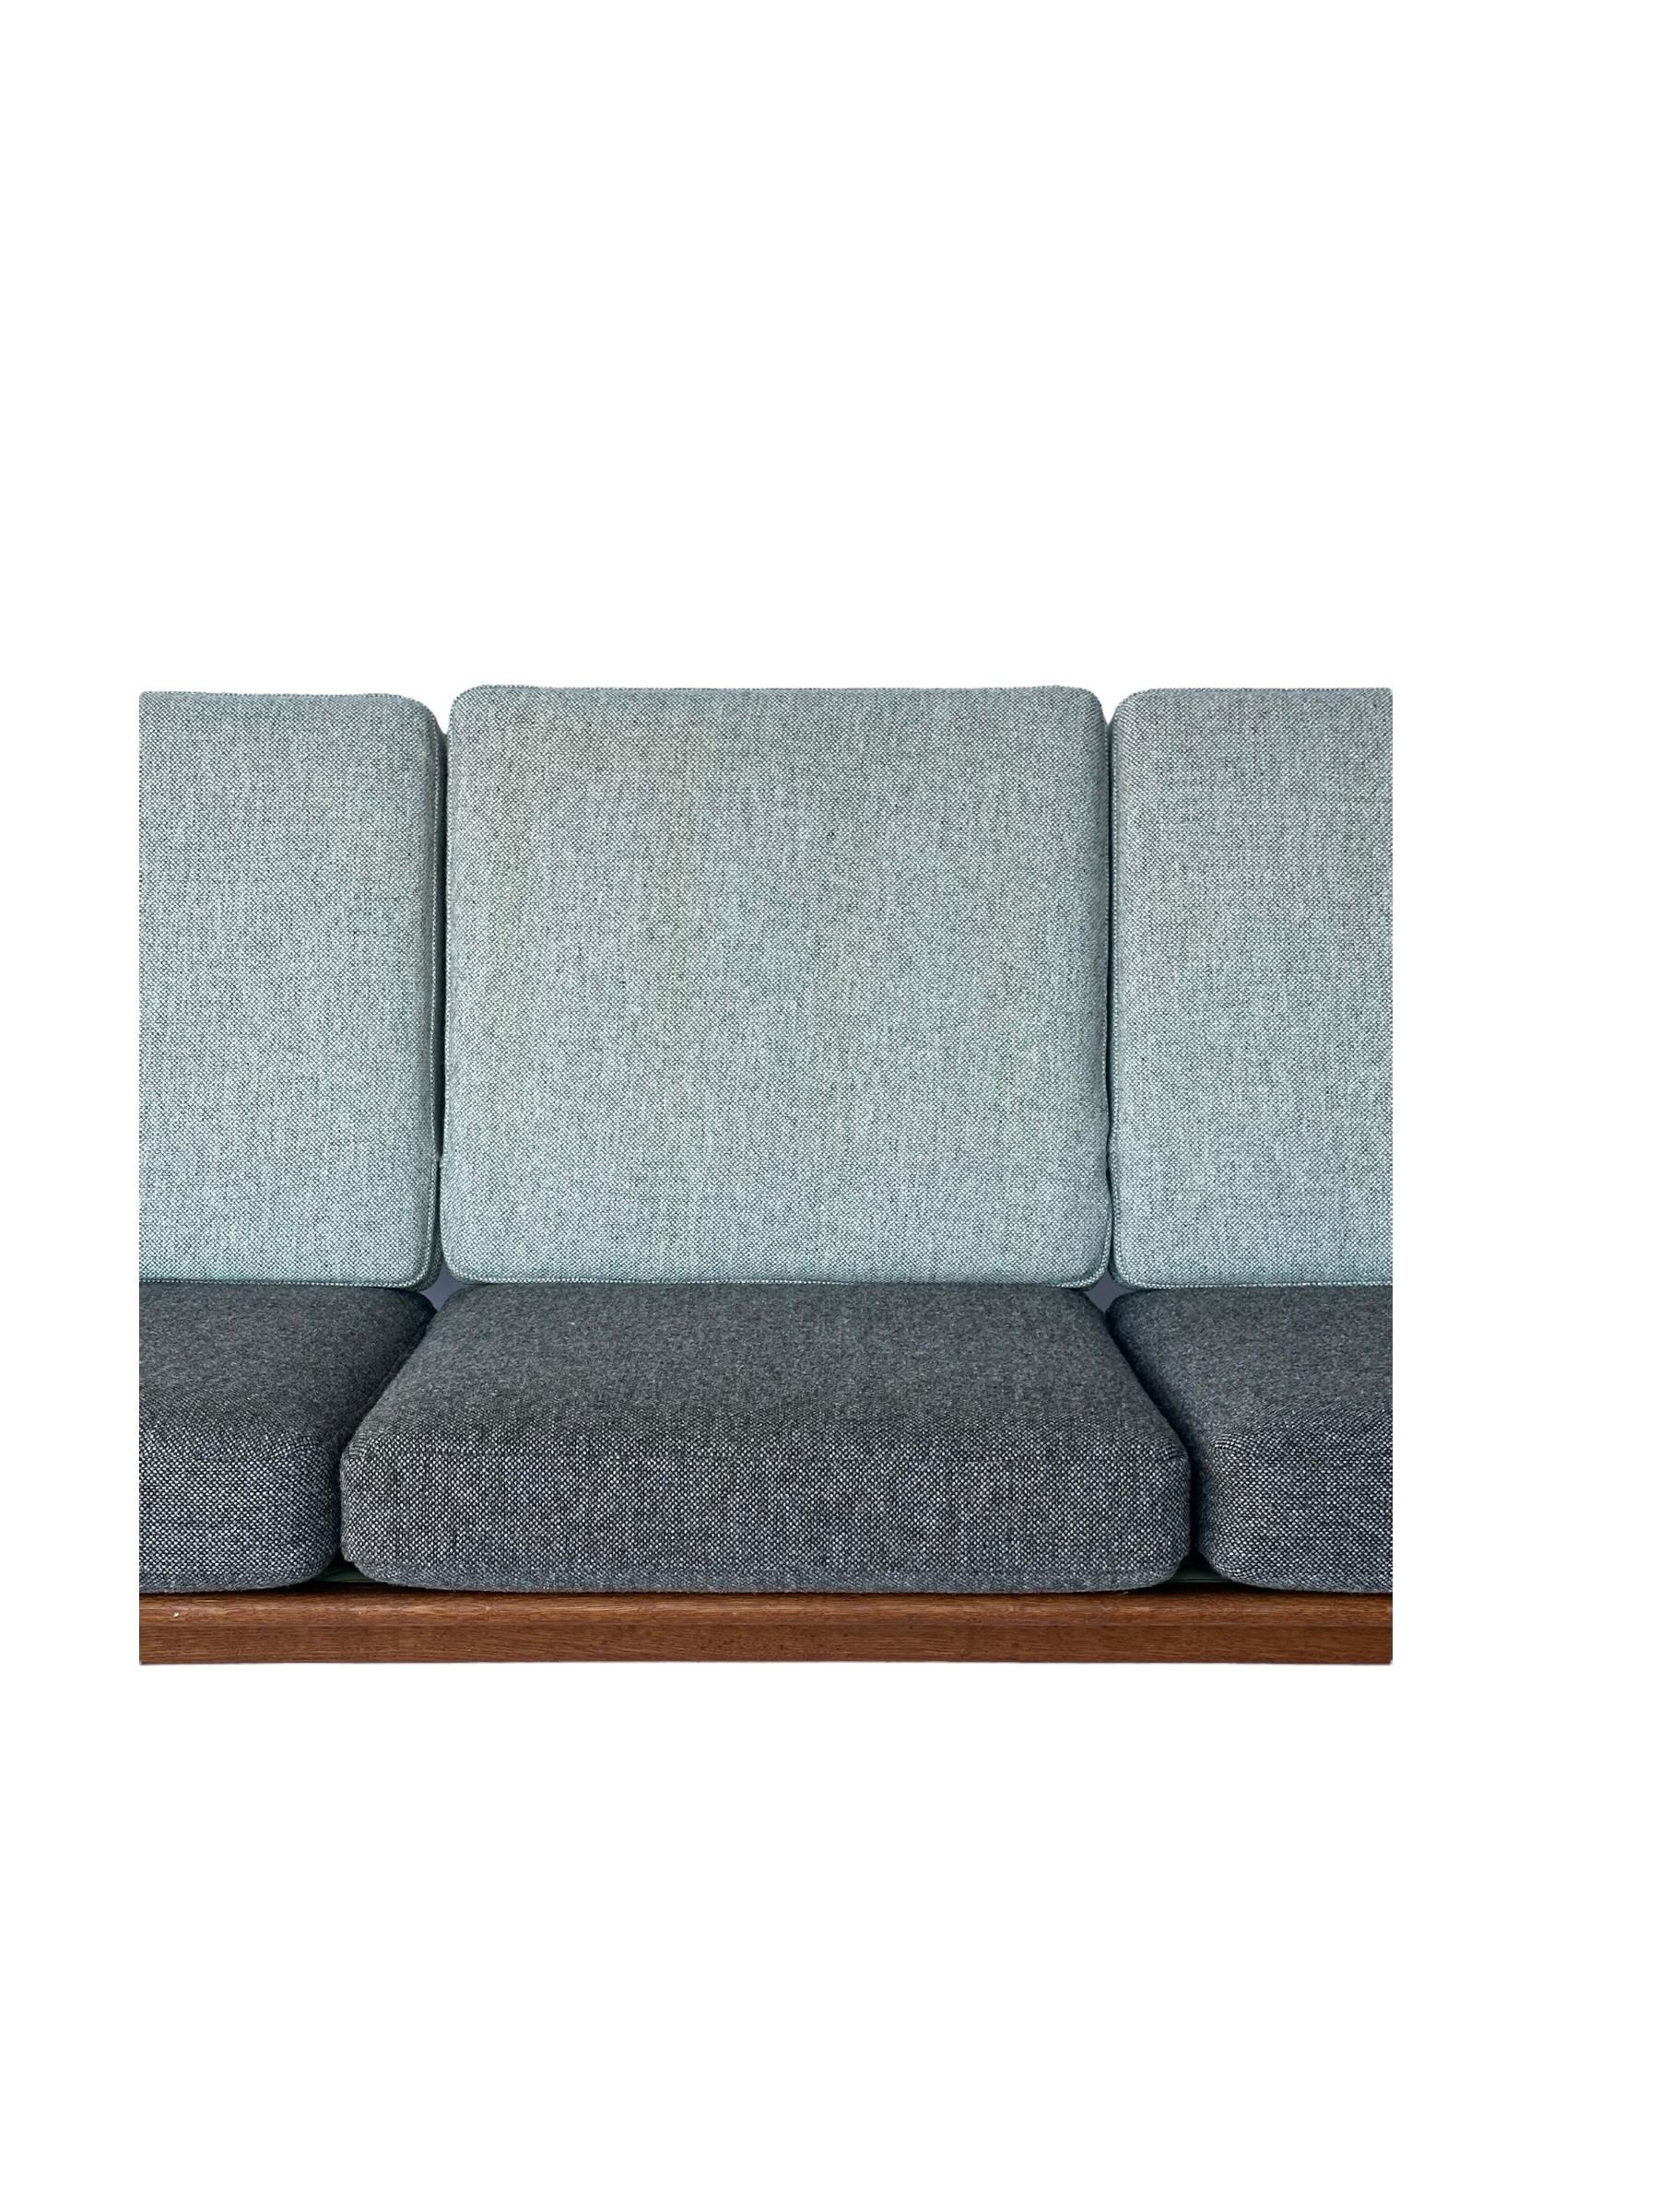 Danish Hans J. Wegner for Getama Signed Sofa with new Mataram Upholstery For Sale